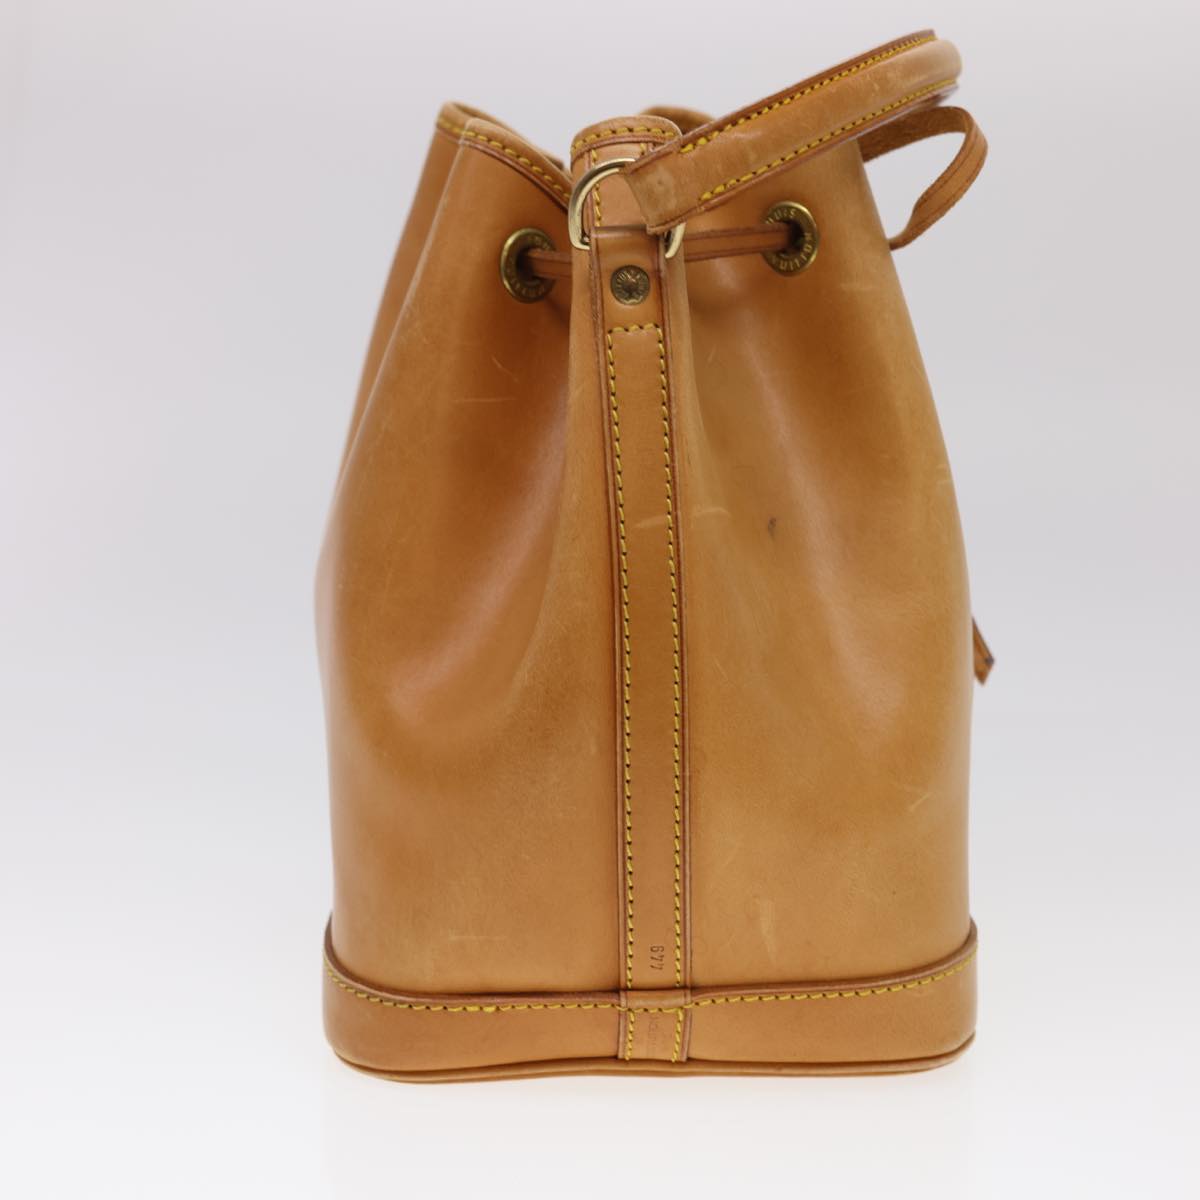 LOUIS VUITTON Nomad leather Petit Noe Shoulder Bag 2way Brown M85003 Auth 40181